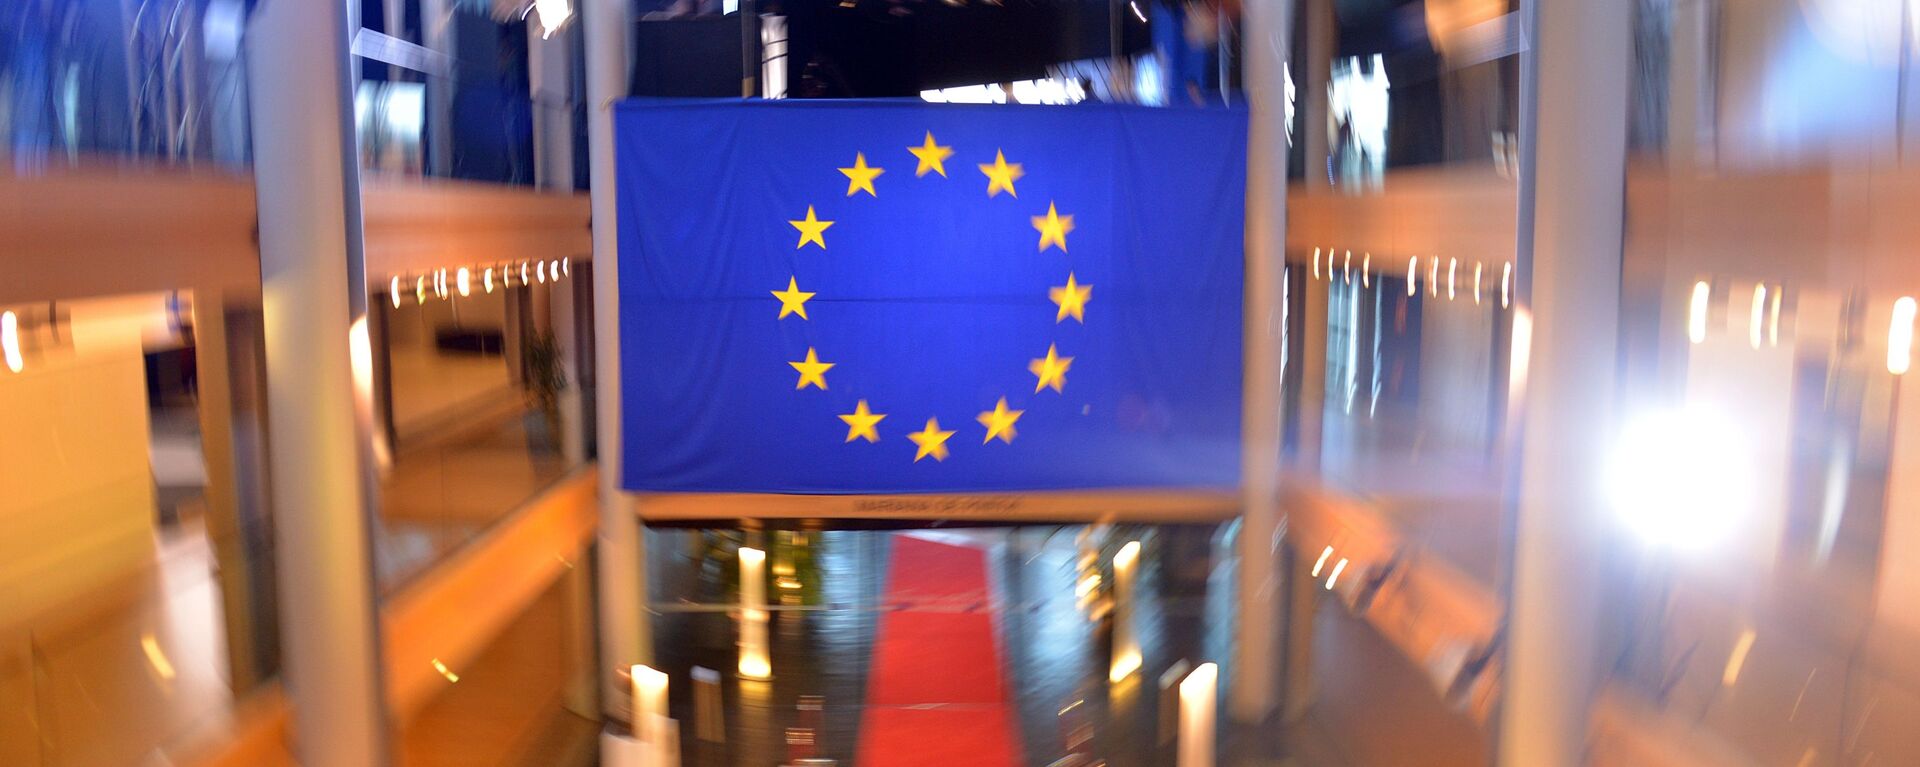 Флаг Евросоюза в главном здании Совета Европы в Страсбурге - Sputnik Латвия, 1920, 02.03.2021